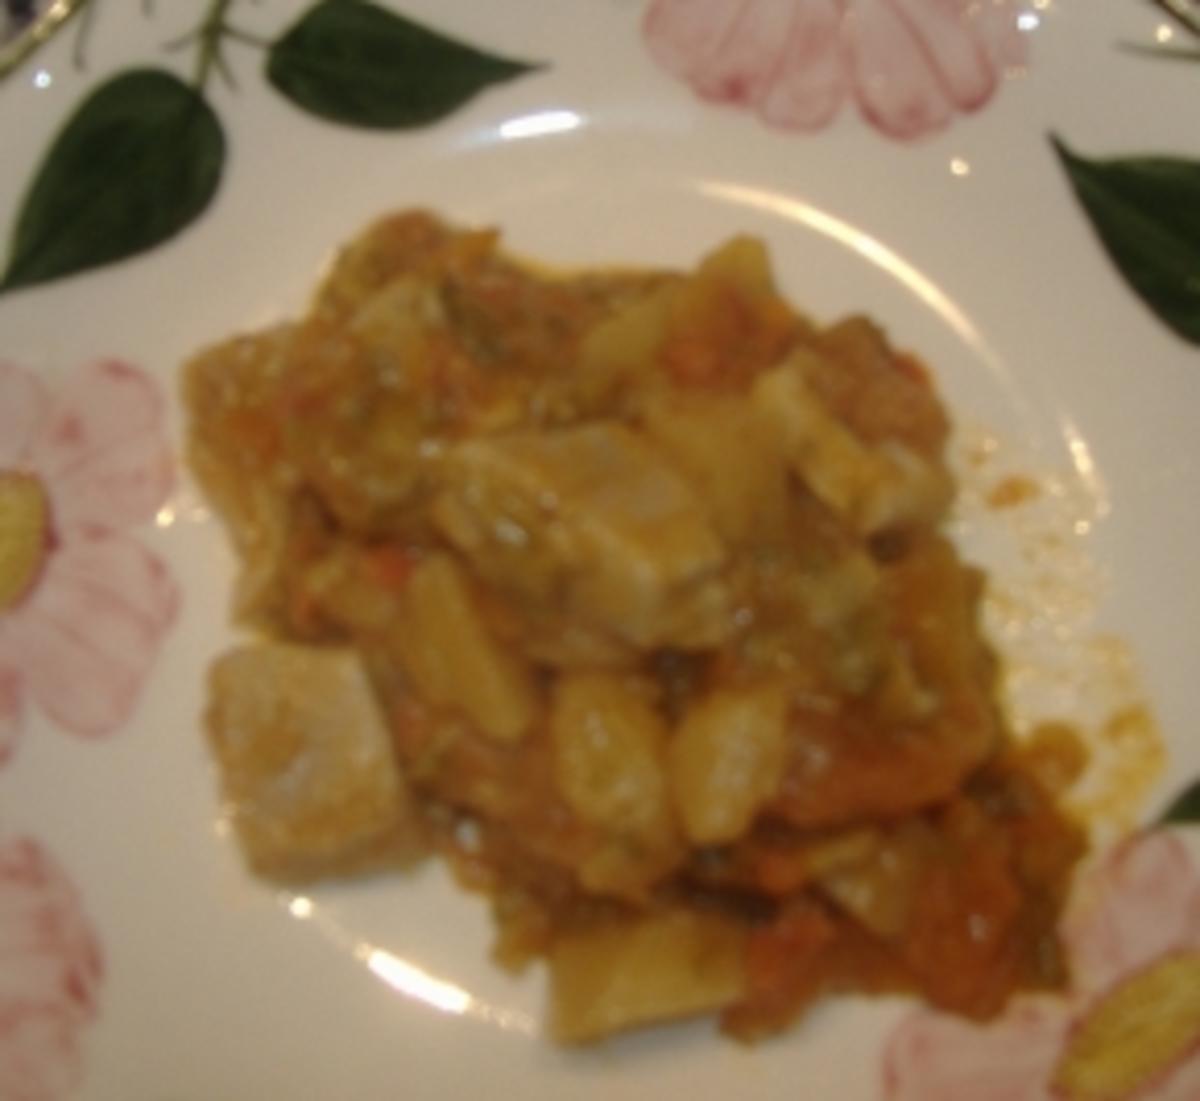 Marmitako (Thunfisch mit Kartoffeln und Paprika) - Rezept - Bild Nr. 2